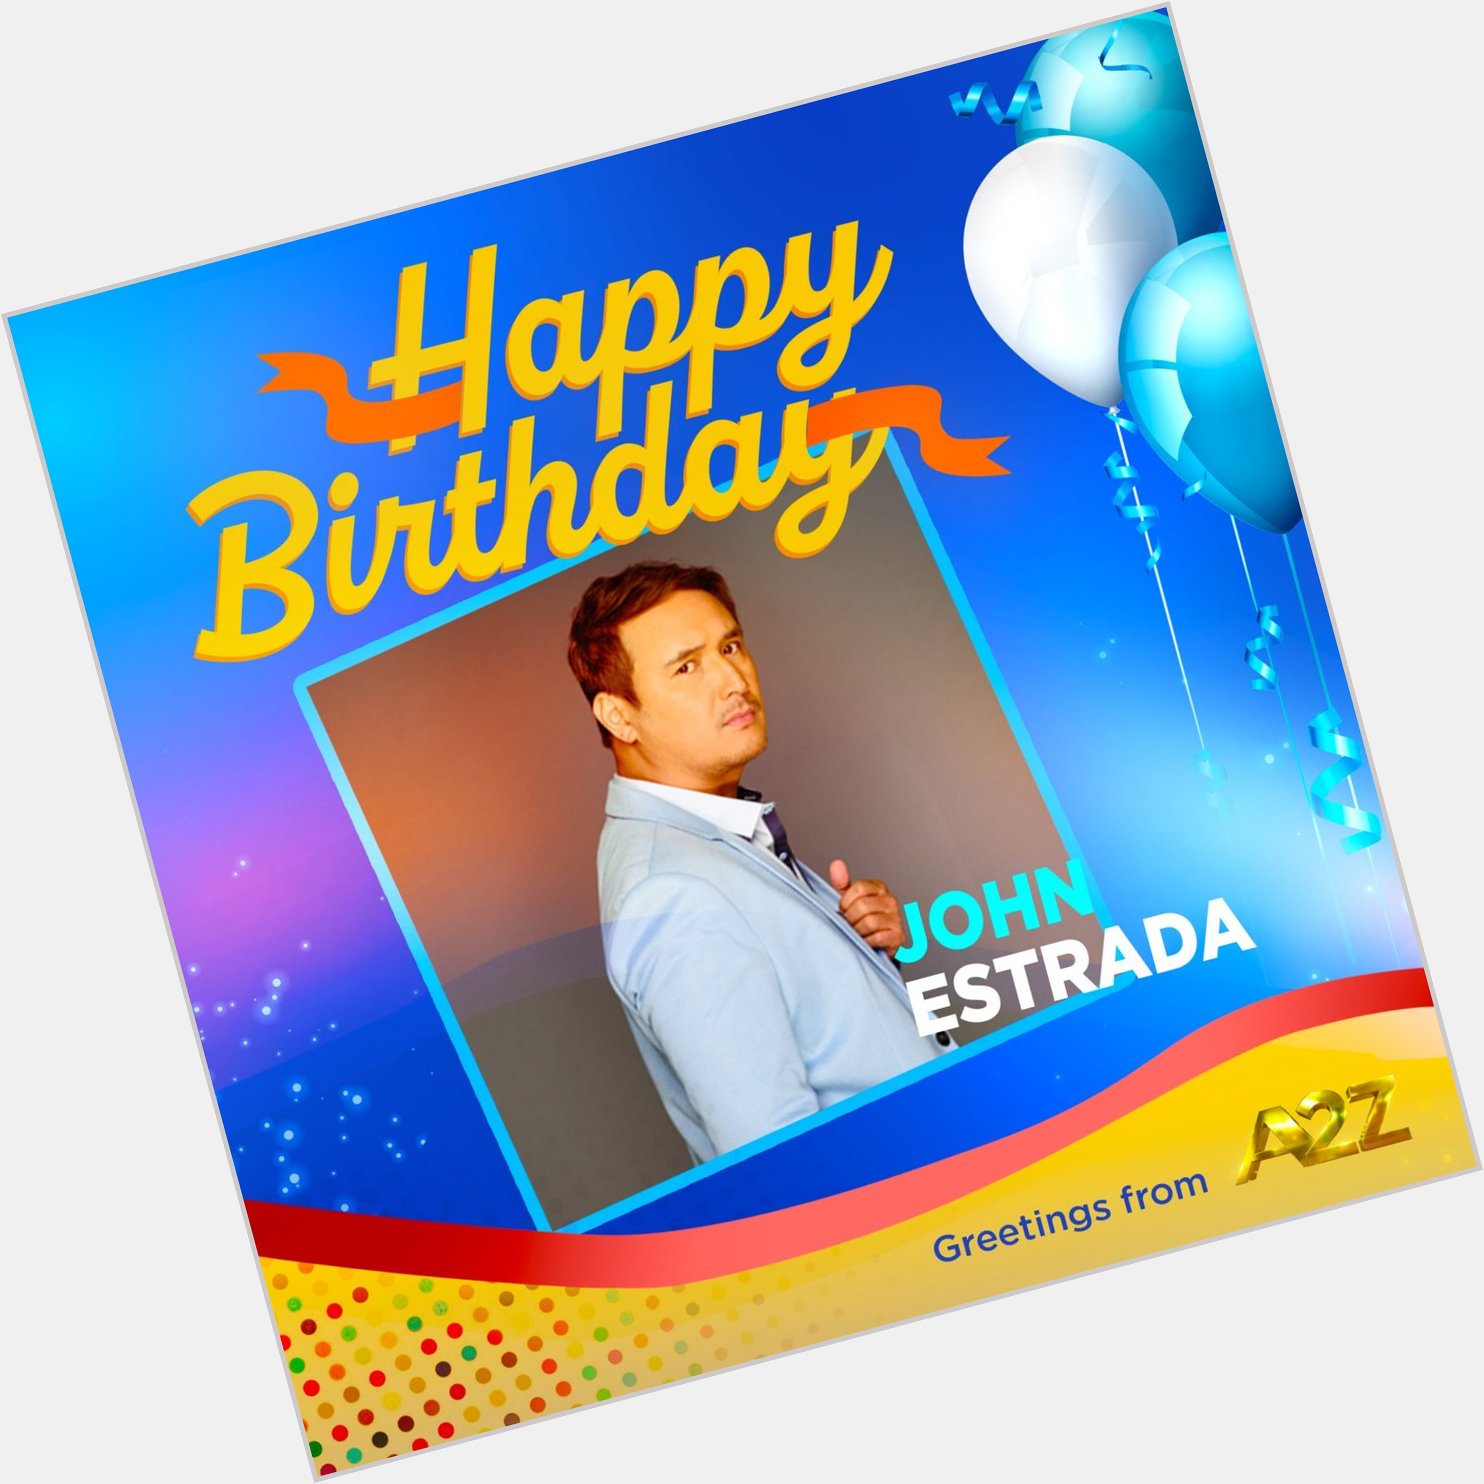 Happy birthday, John Estrada!   